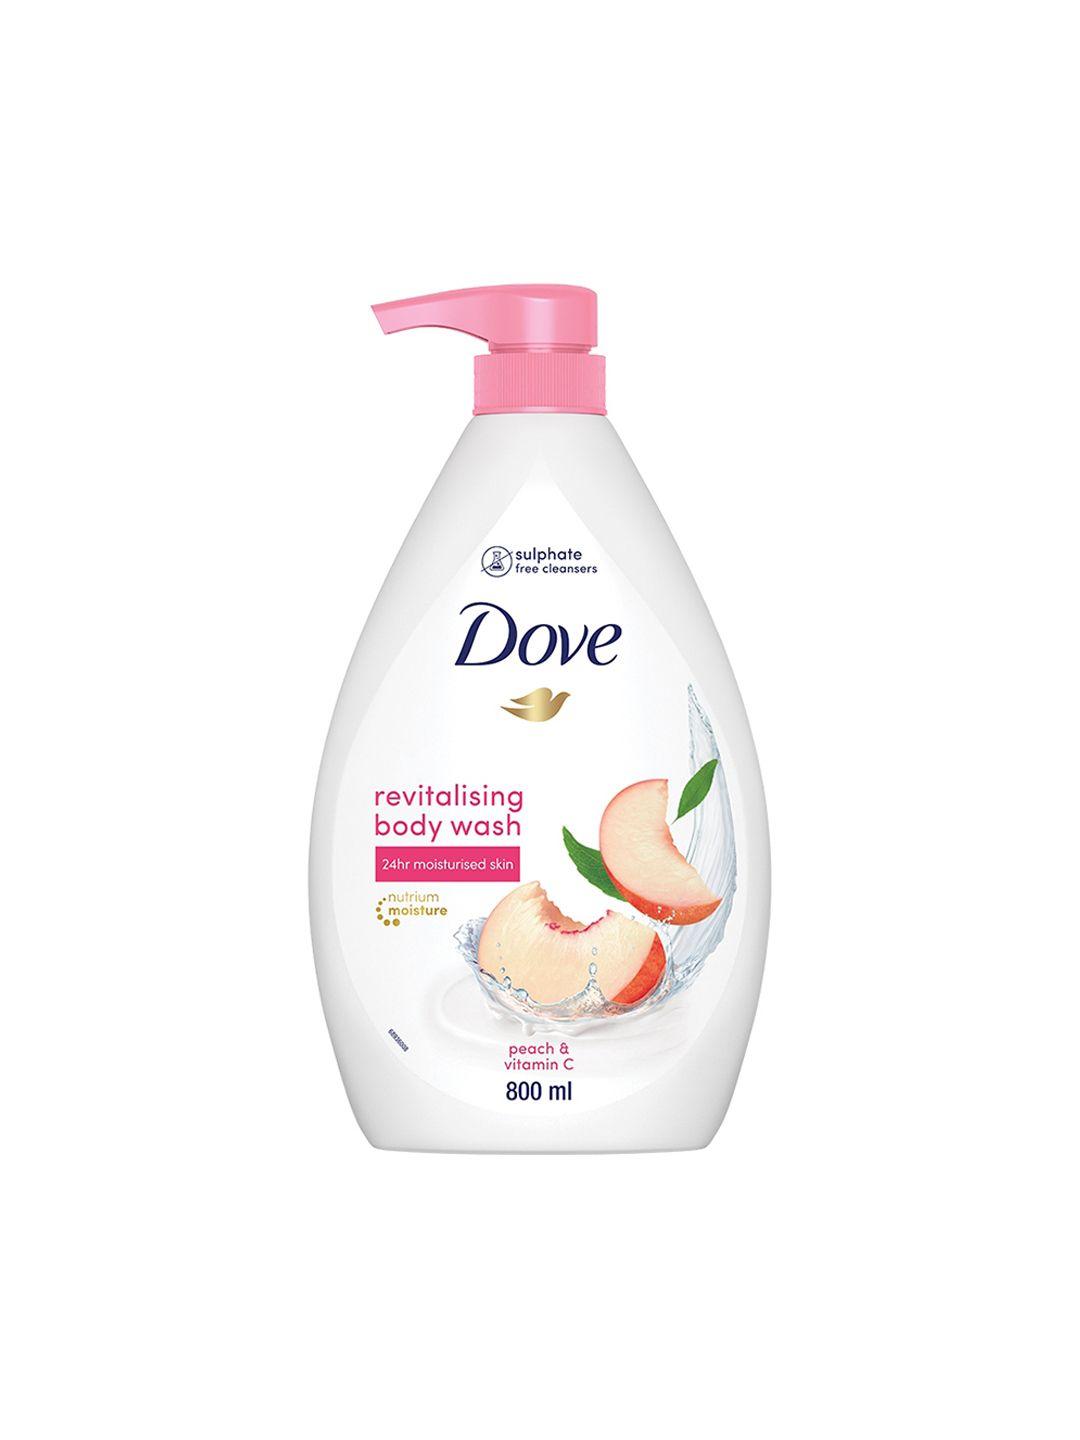 Dove Revitalizing Body Wash with Scented Peach & Vitamin C - 800ml